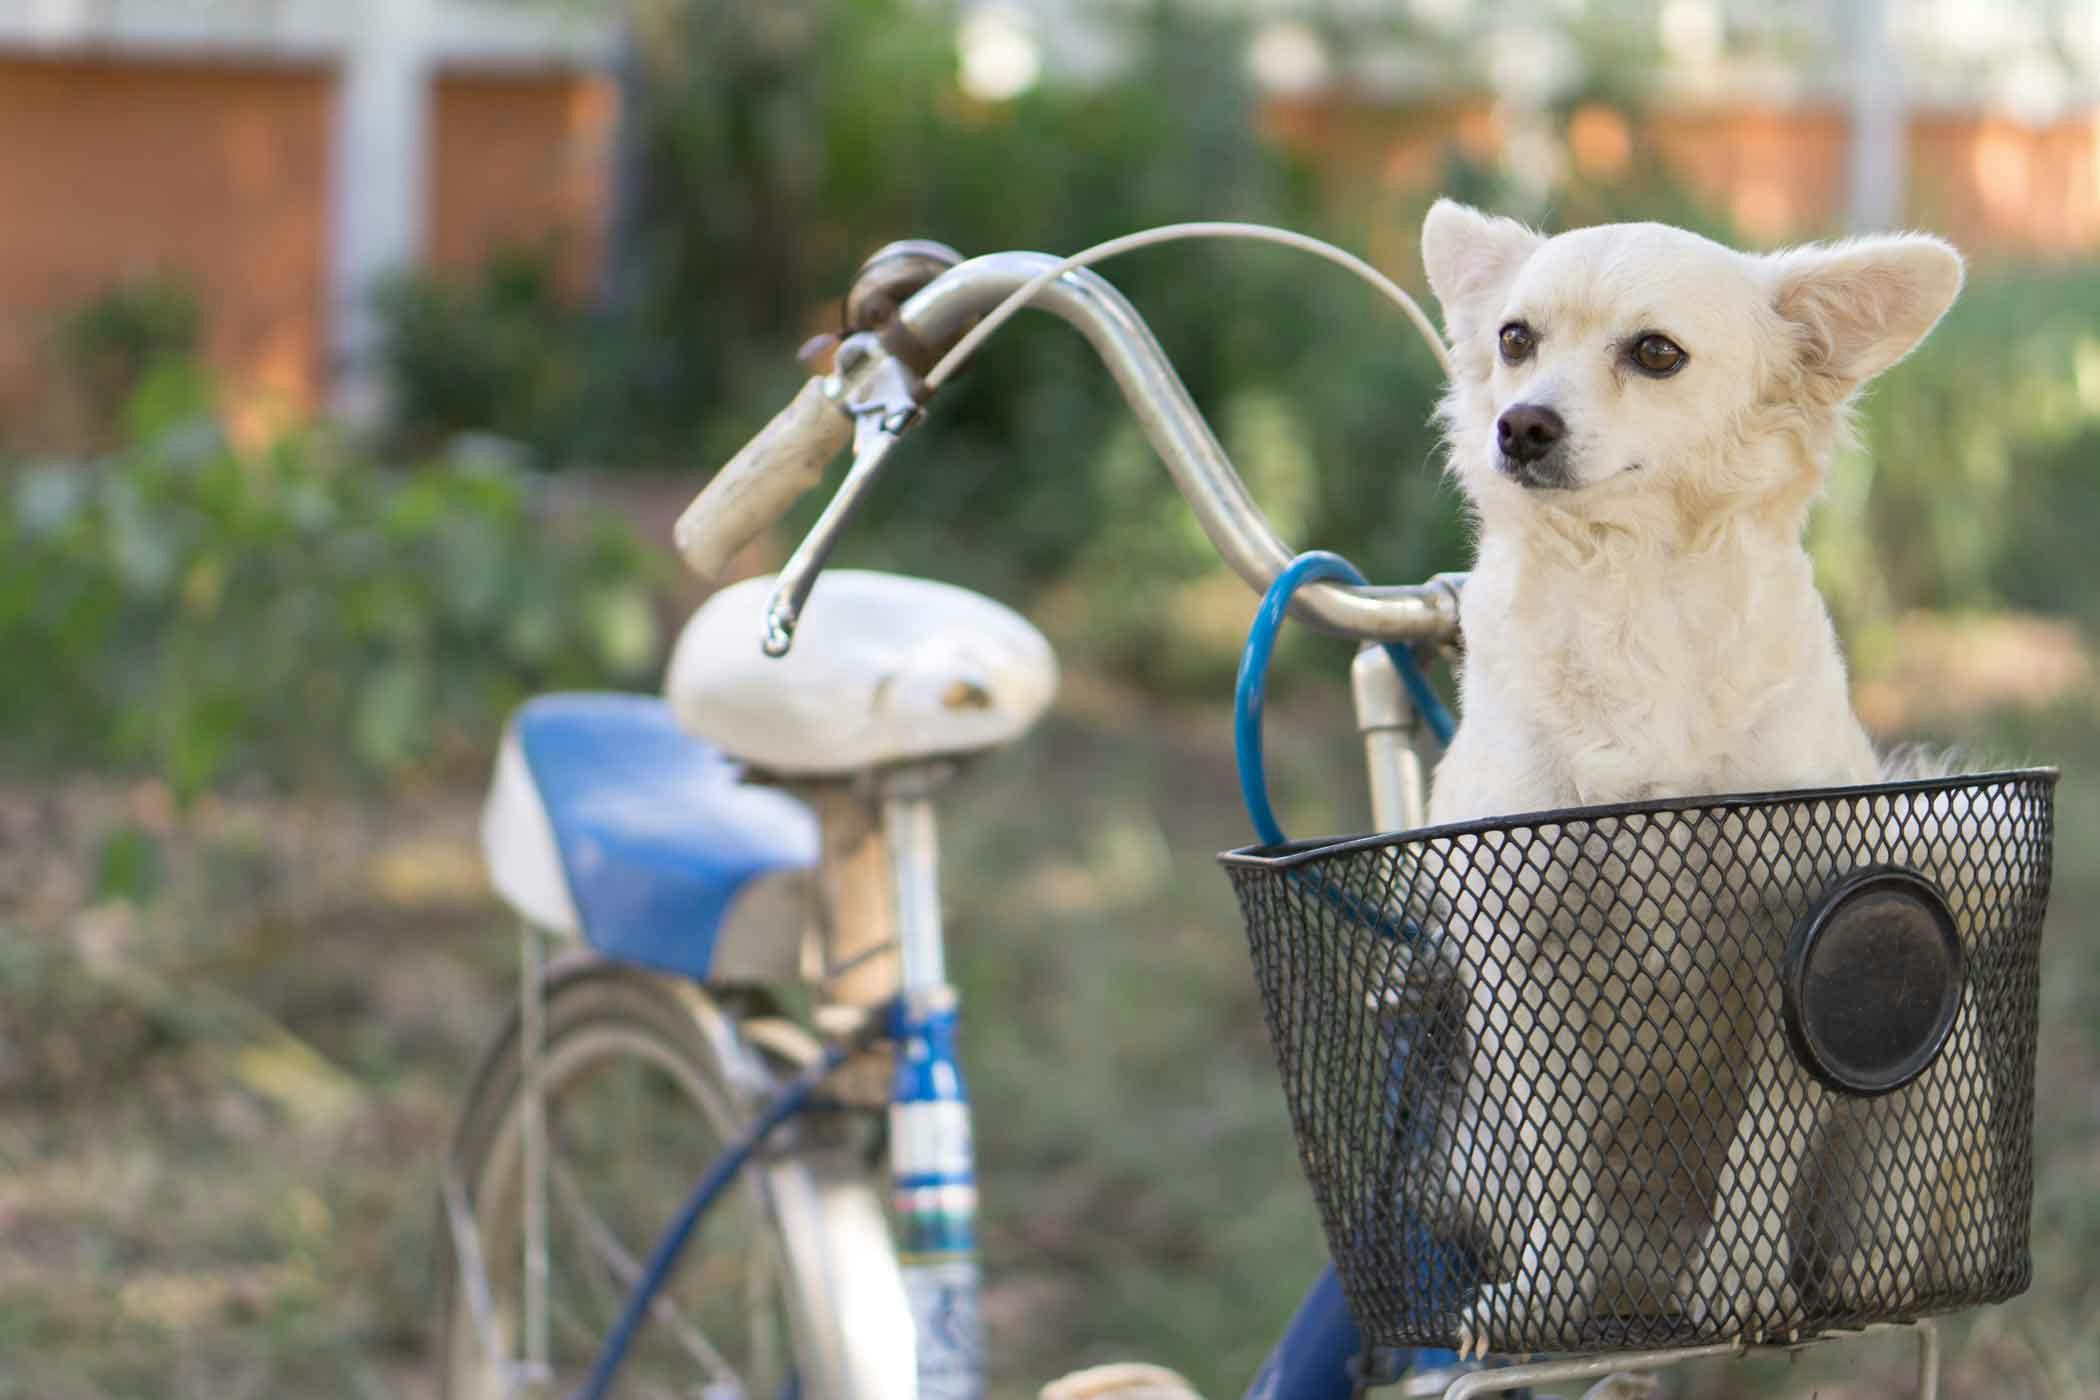 dog bicycle basket